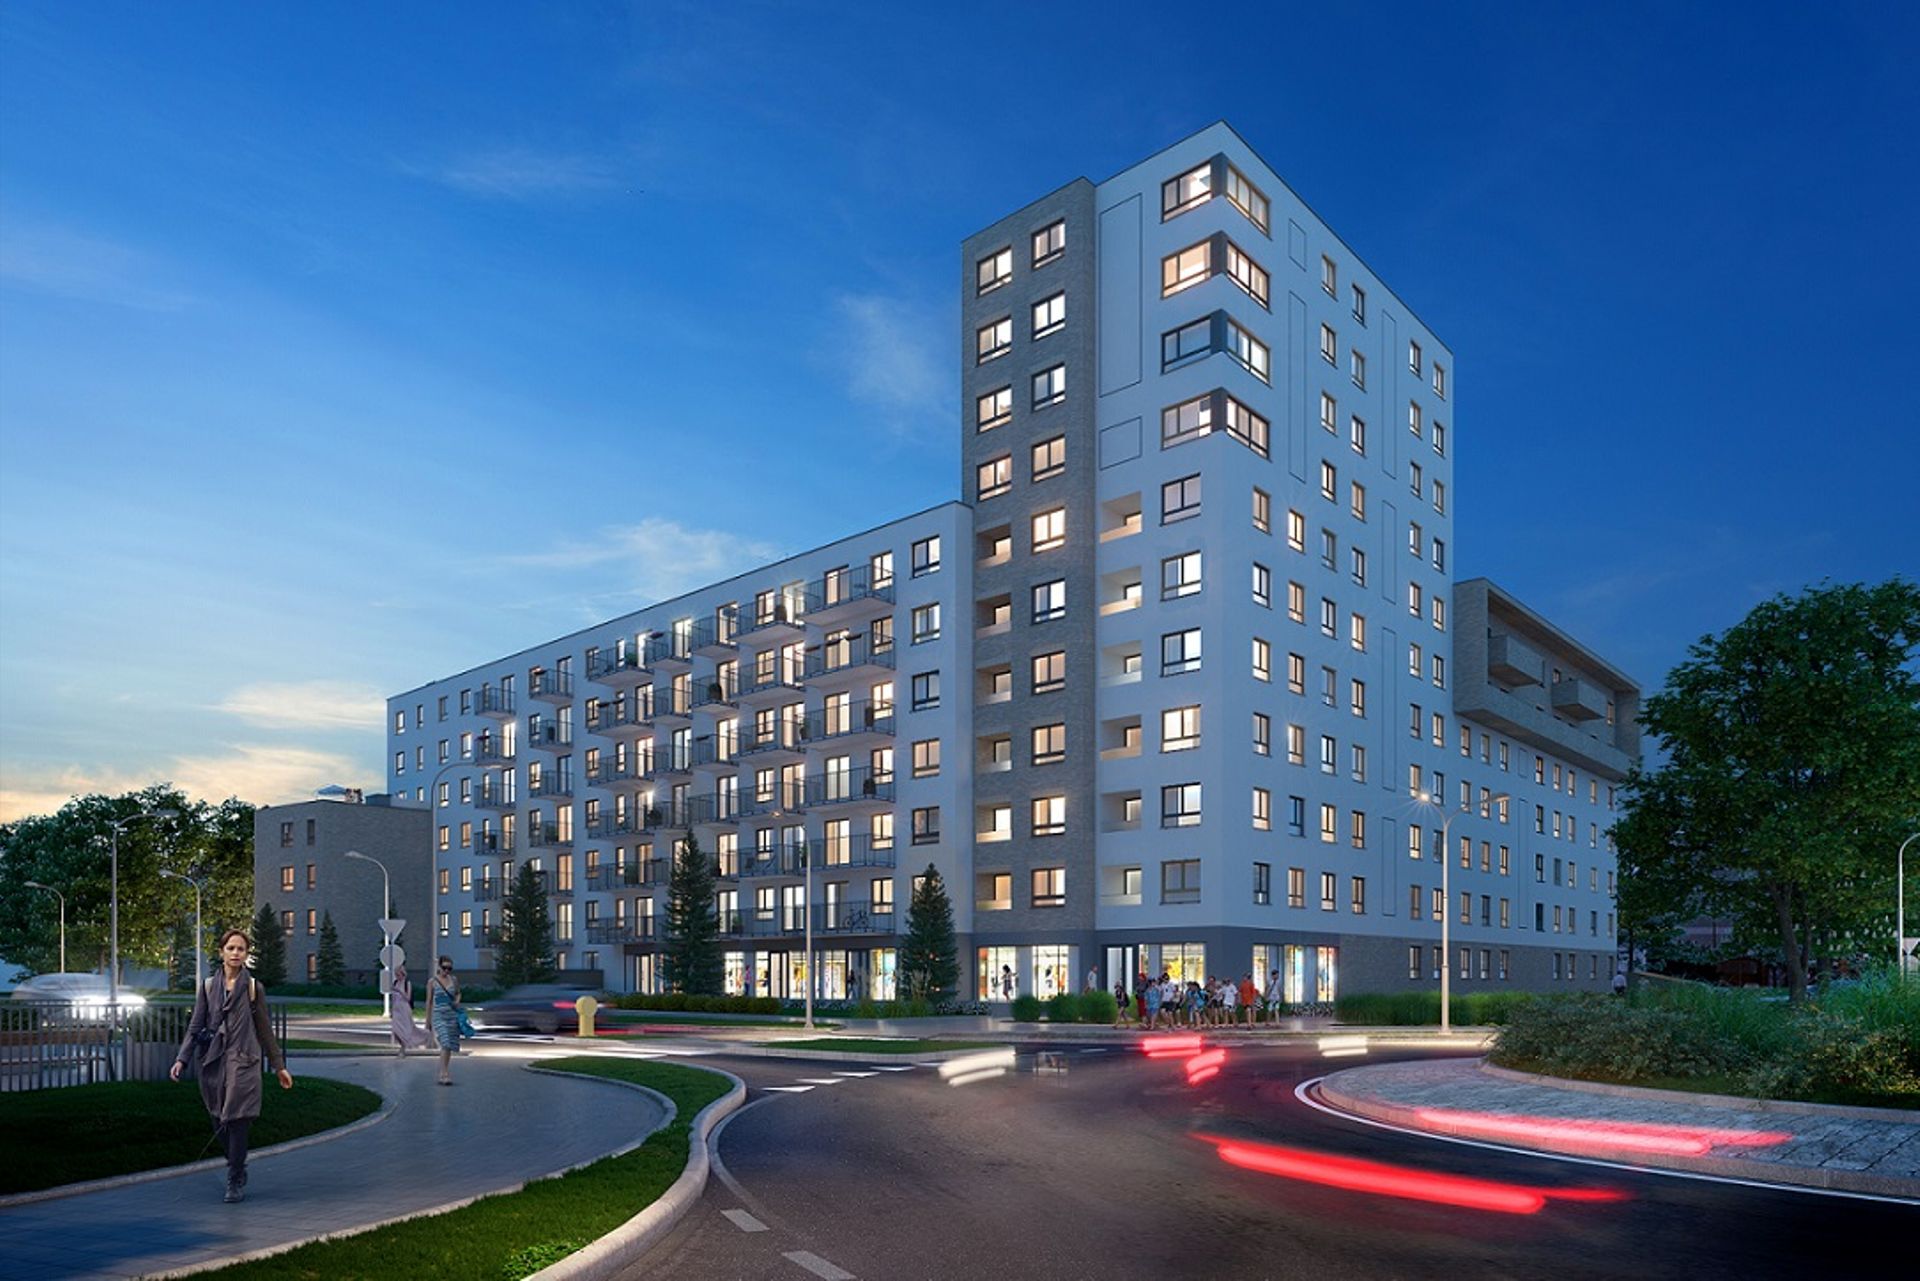 Wrocław: Piękna 21 – Dom Development buduje dziesięciopiętrowy blok w miejsce salonu samochodowego 